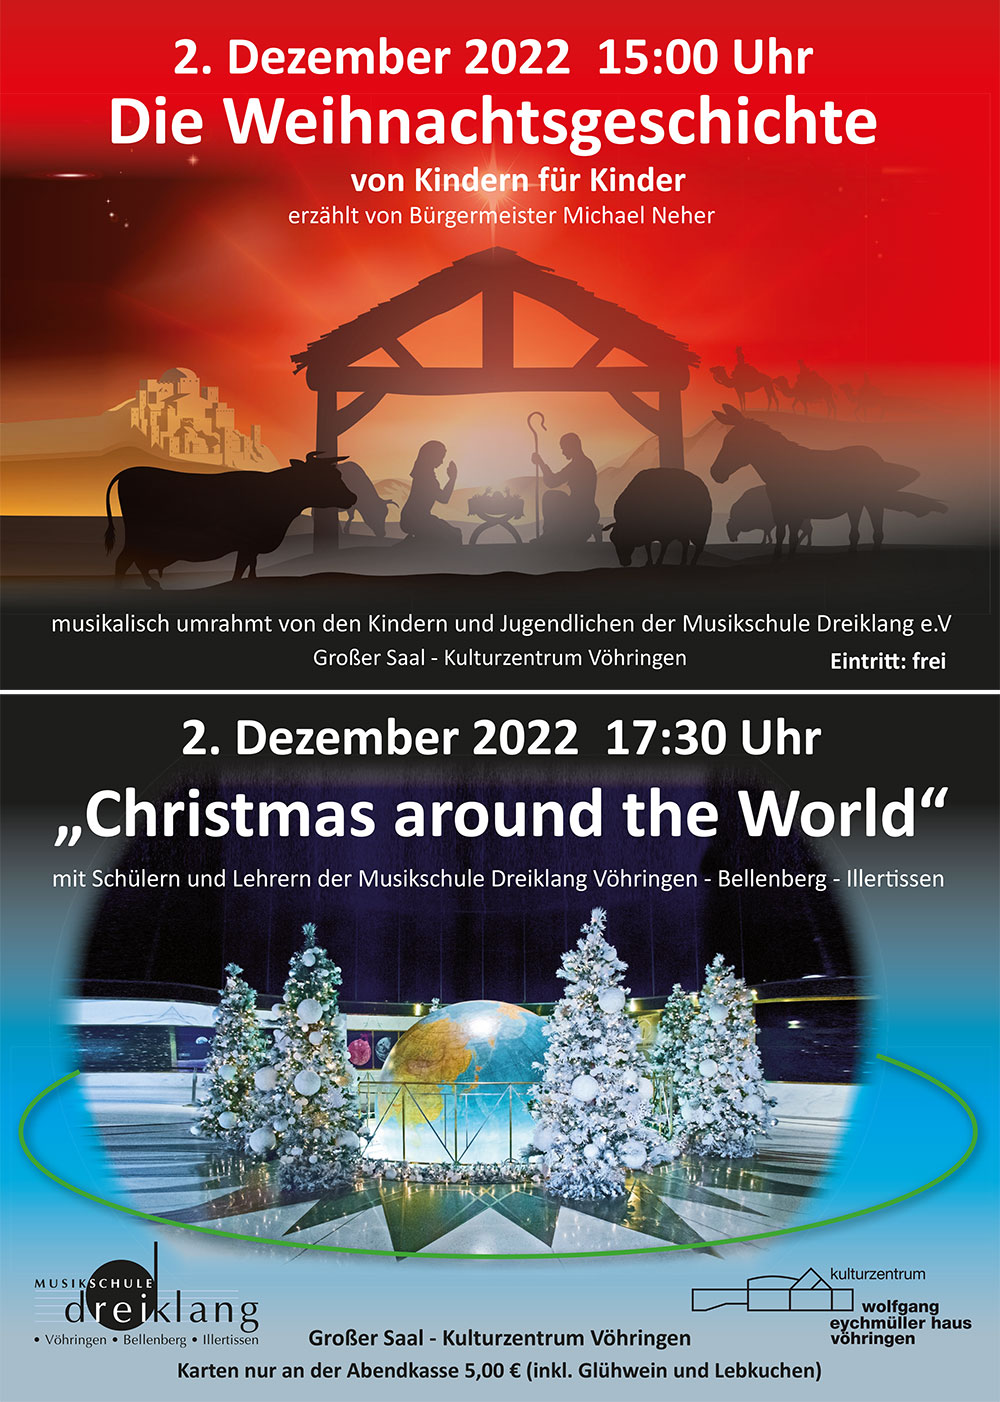 Die Weihnachtsgeschichte und Christmas around the World